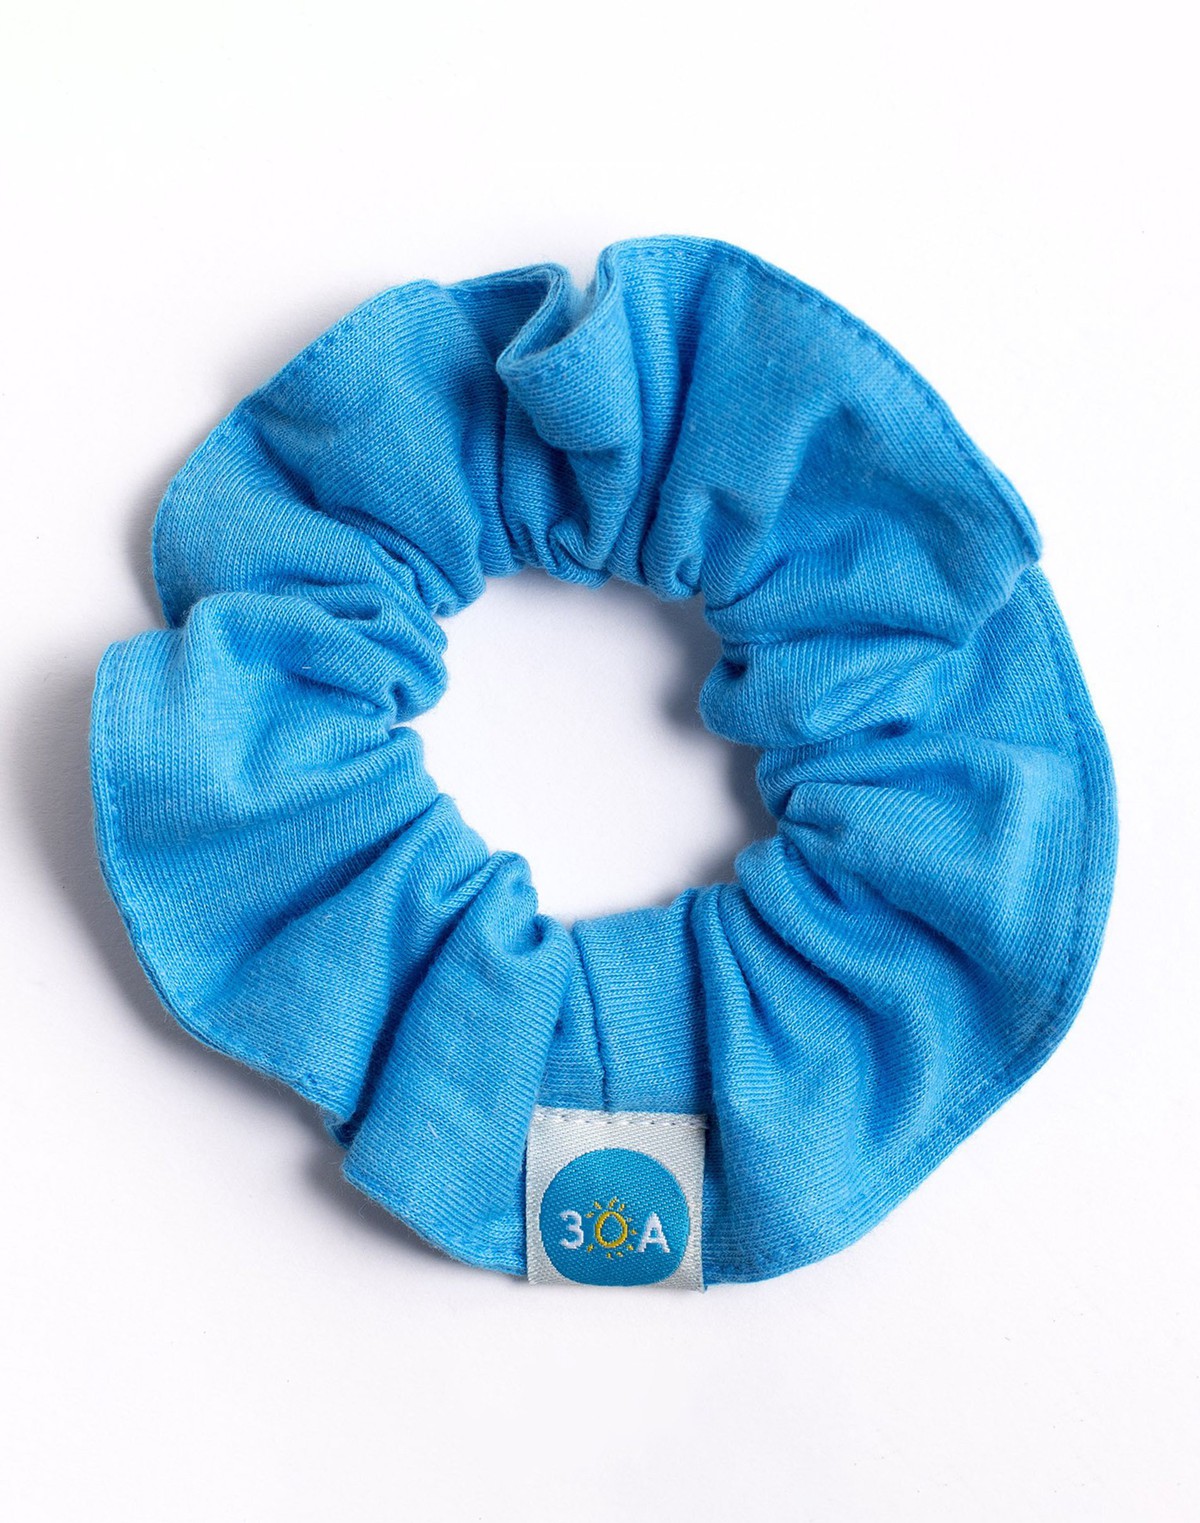 Scrunchie - 30A® Blue item